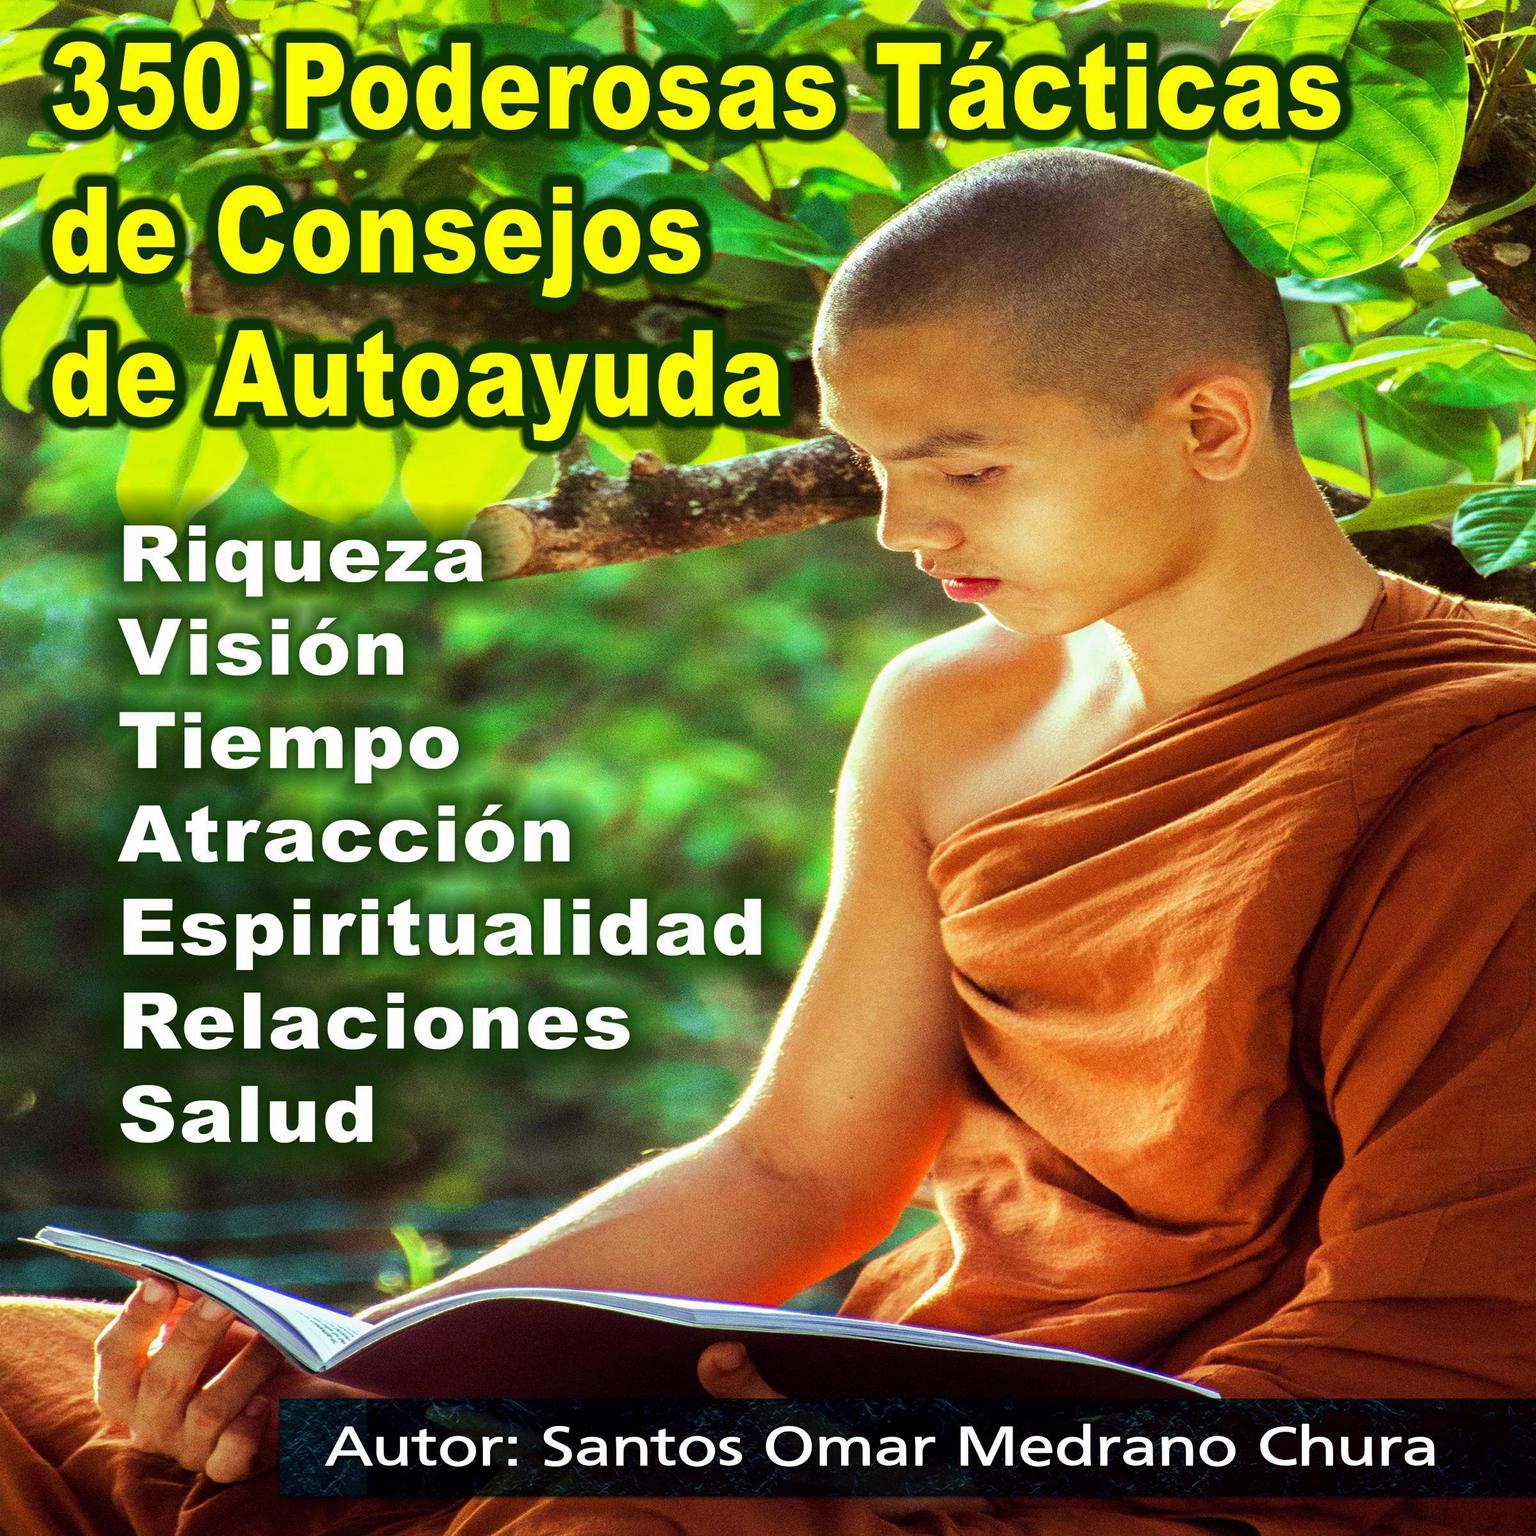 350 Poderosas Tácticas de Consejos de Autoayuda: Riqueza - Visión - Tiempo - Atracción - Espiritualidad - Relaciones - Salud Audiobook, by Santos Omar Medrano Chura